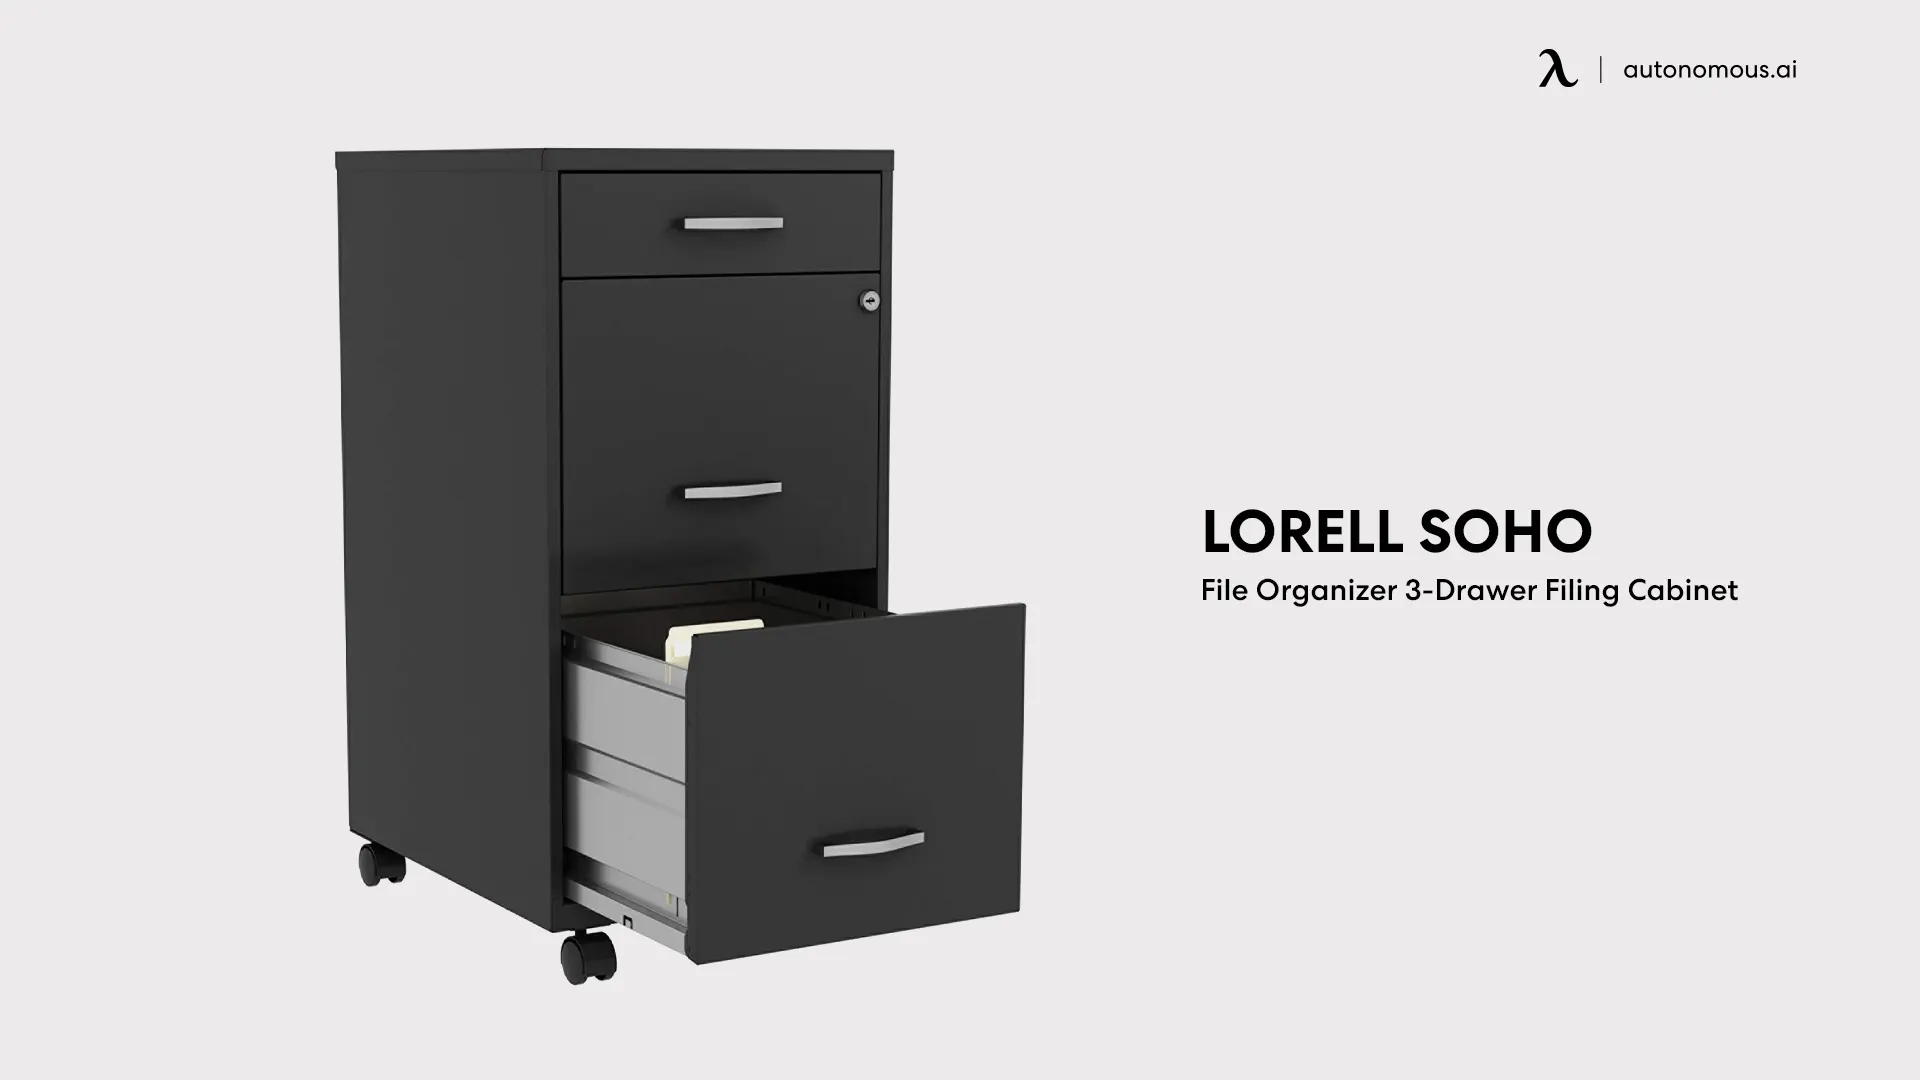 Lorell Soho File Organizer 3-Drawer Filing Cabinet